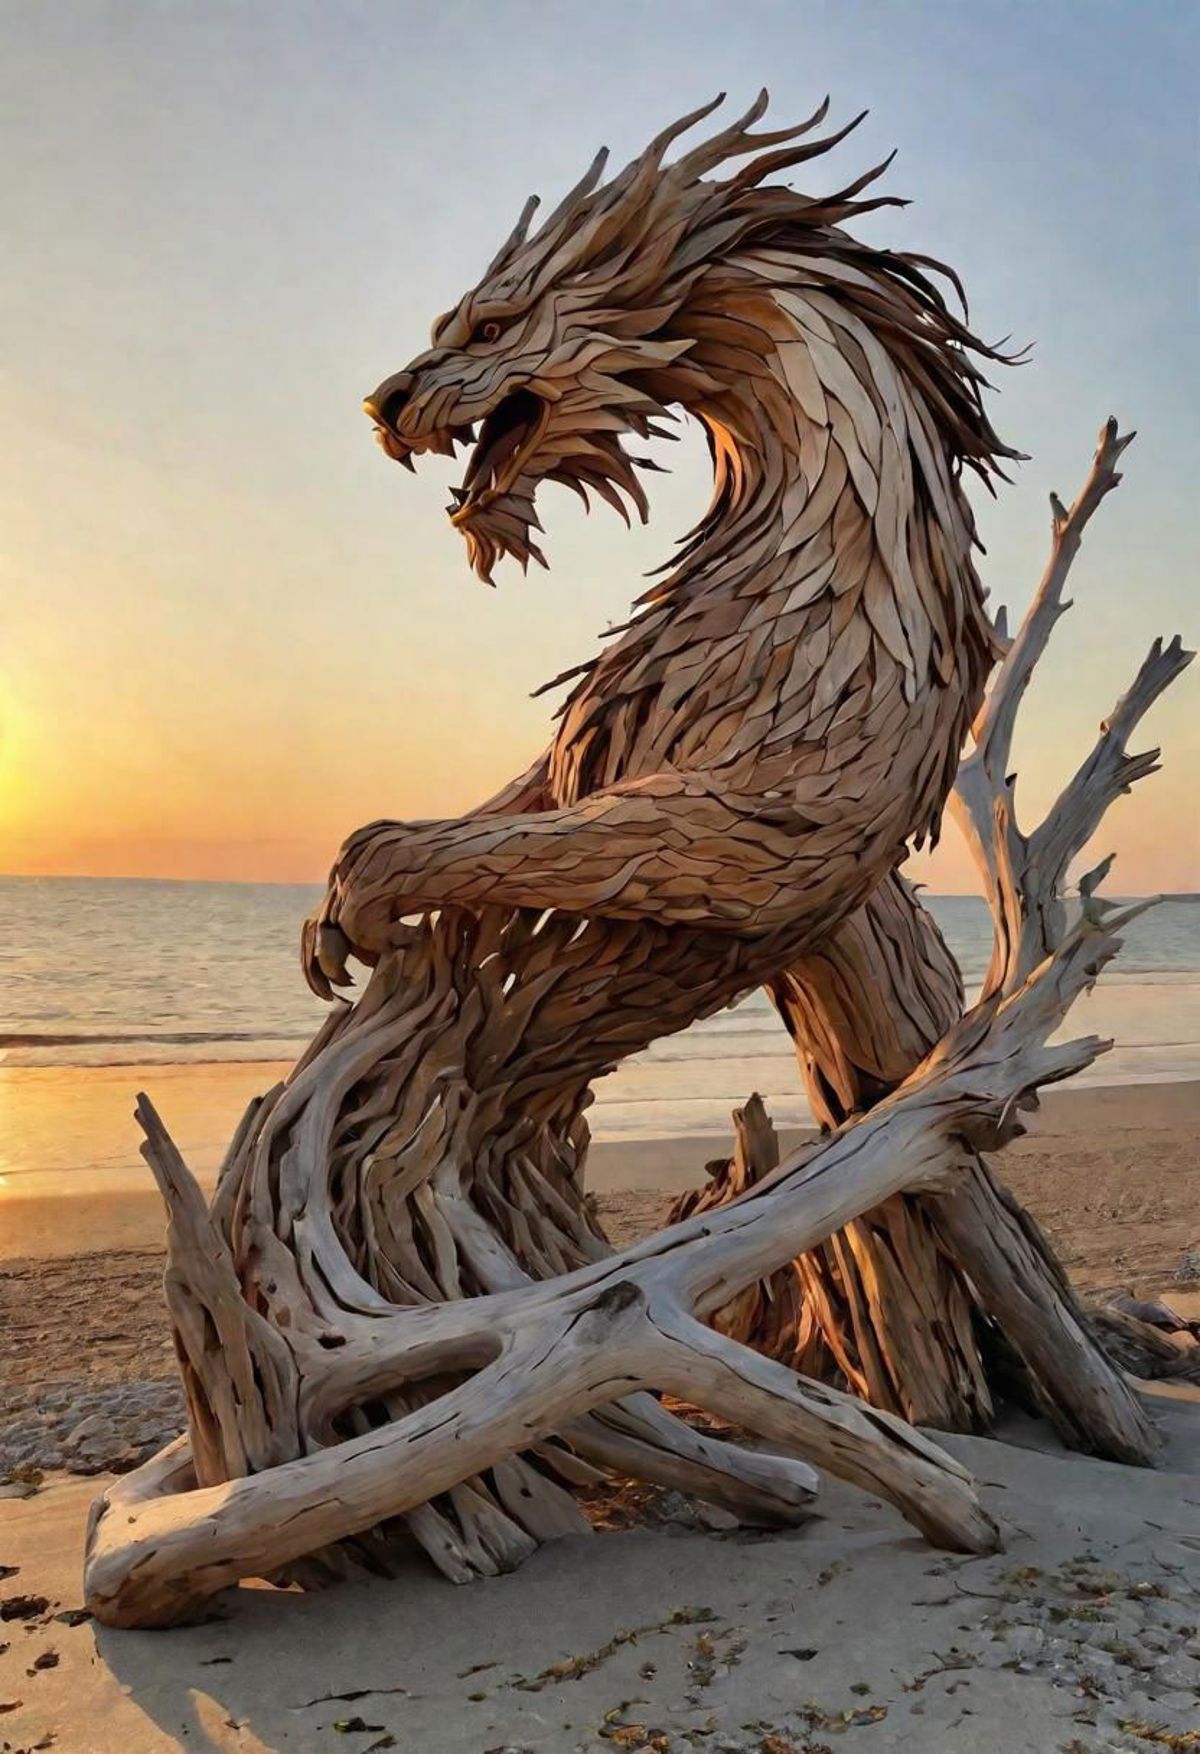 A wooden dragon sculpture on a beach.